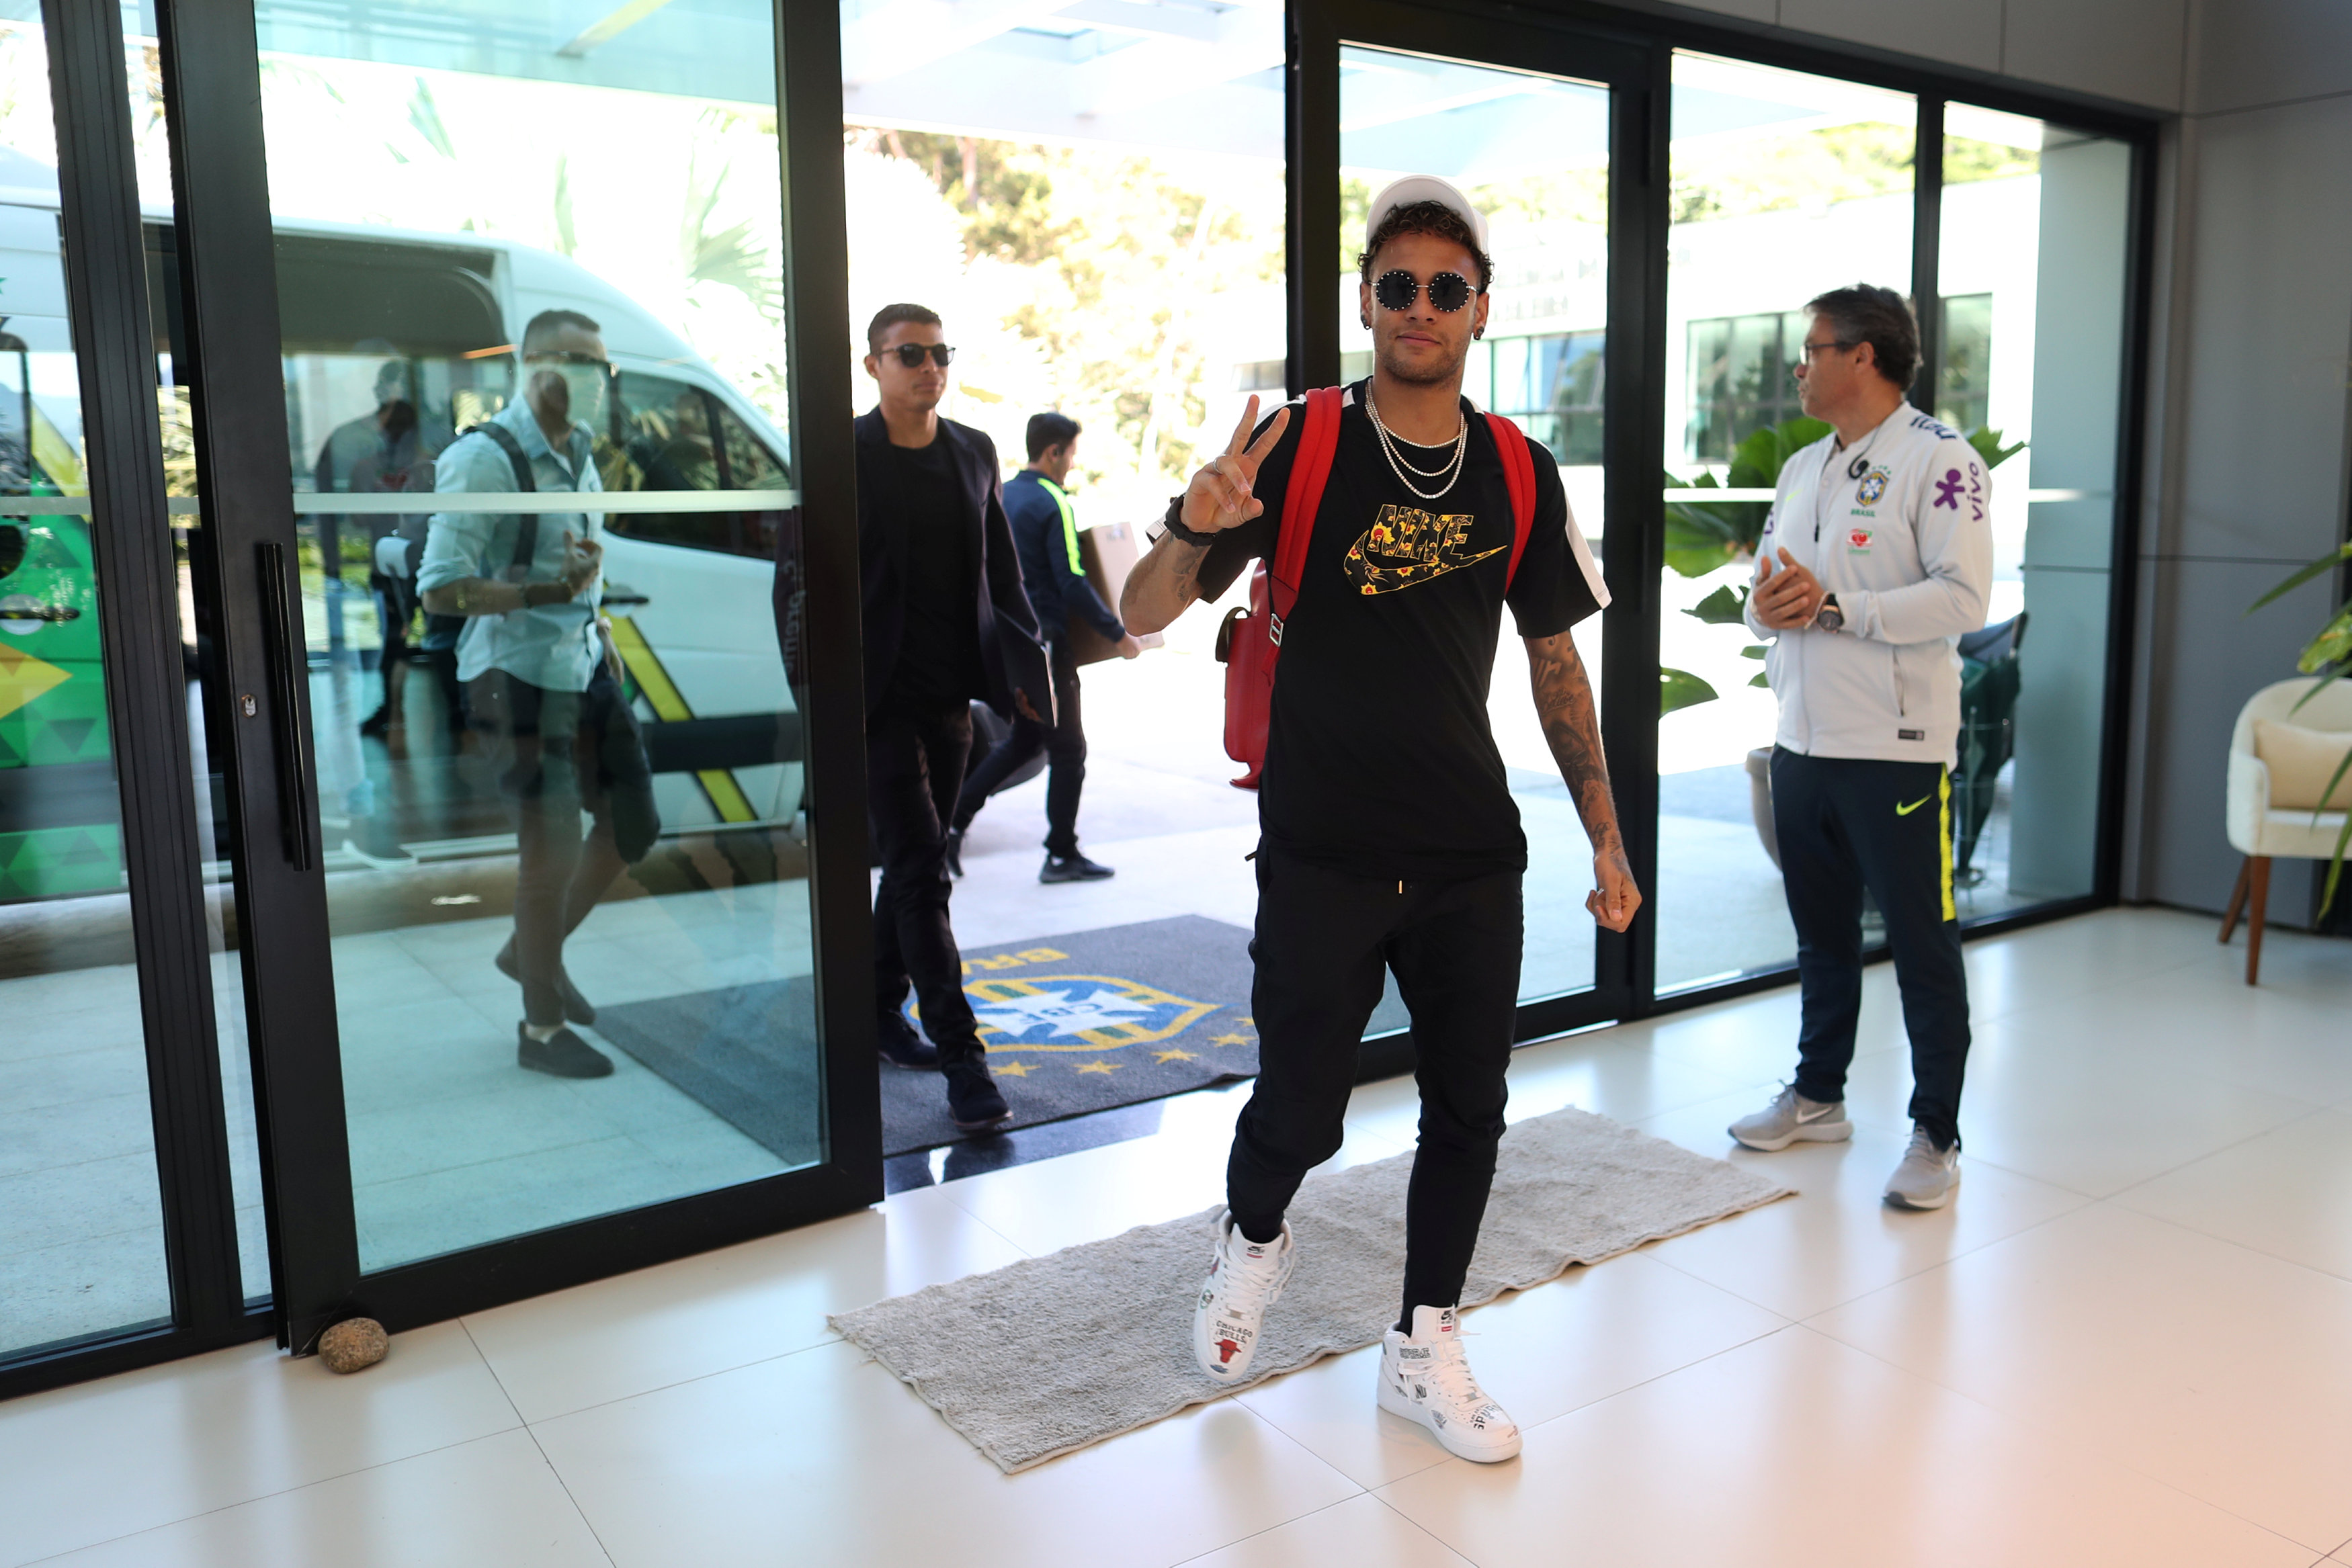 Neymar inicia los primeros entrenamientos con el balón en Brasil (Fotos)